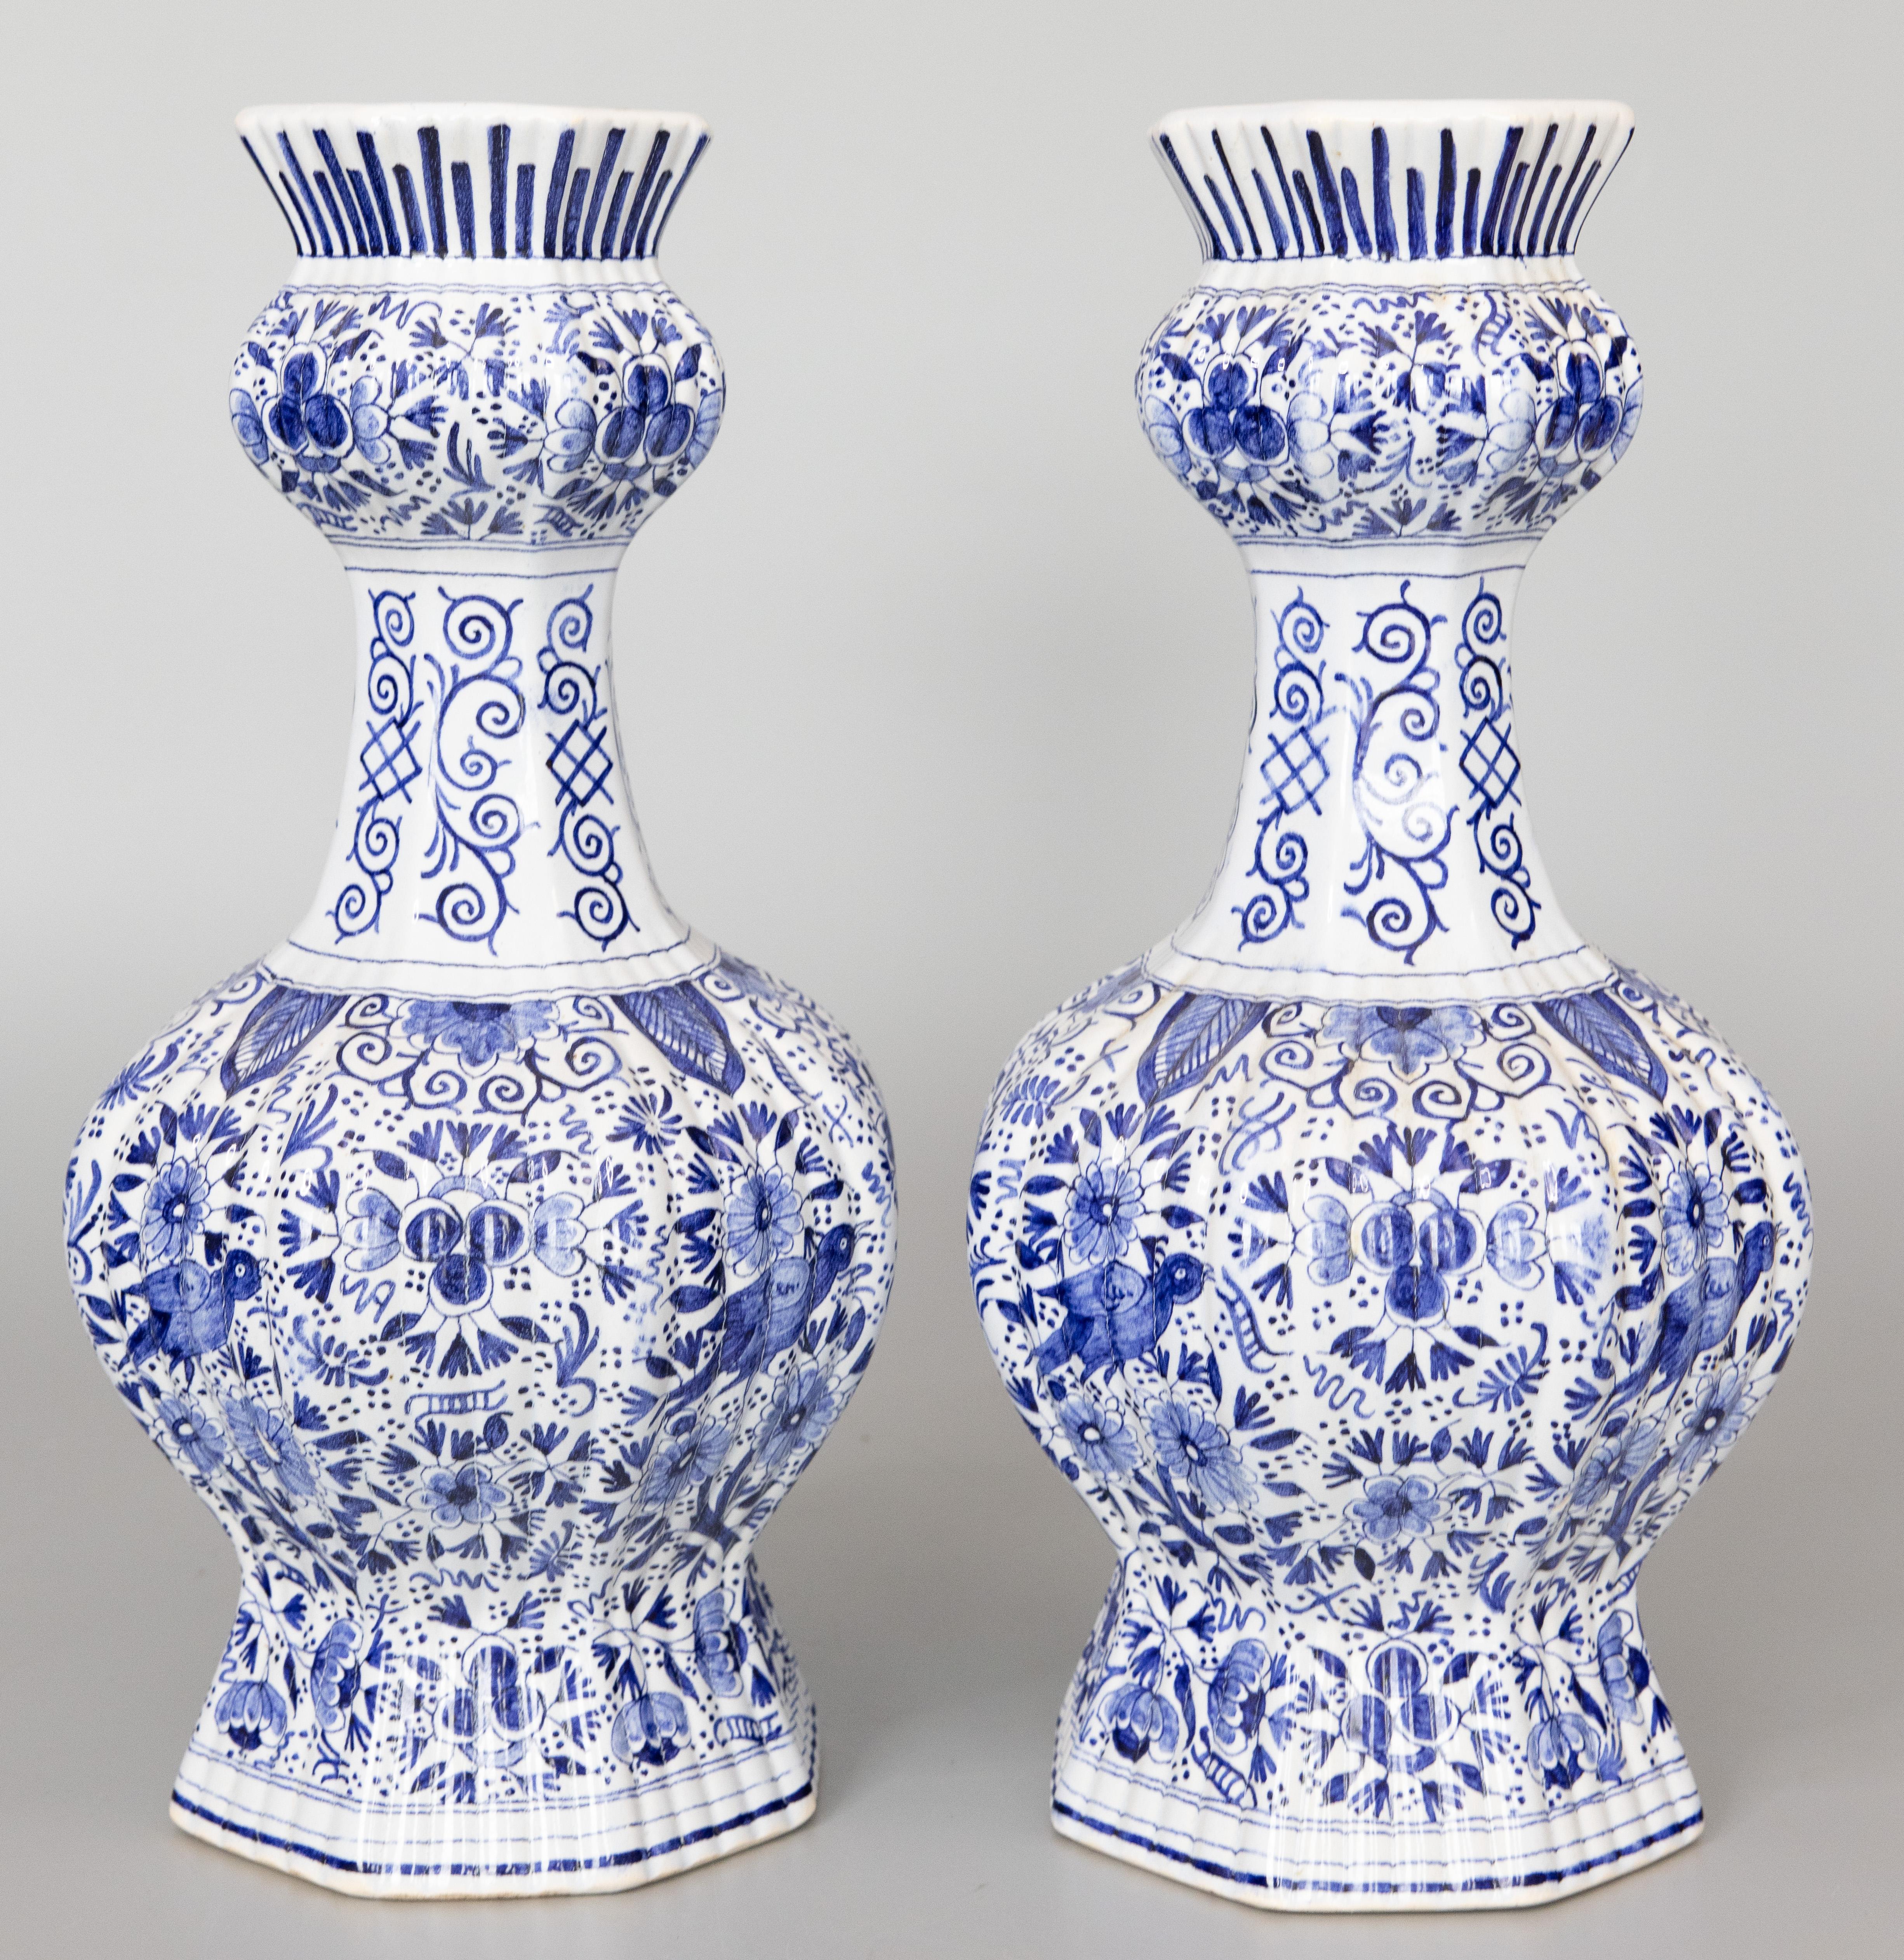 Superbe paire de vases à boutons en faïence de Delft, datant du 19e siècle, vers 1800. Marque du fabricant au revers. Ces superbes vases ont un corps nervuré avec des oiseaux, des fleurs, des feuilles et des volutes ornées peints à la main dans des